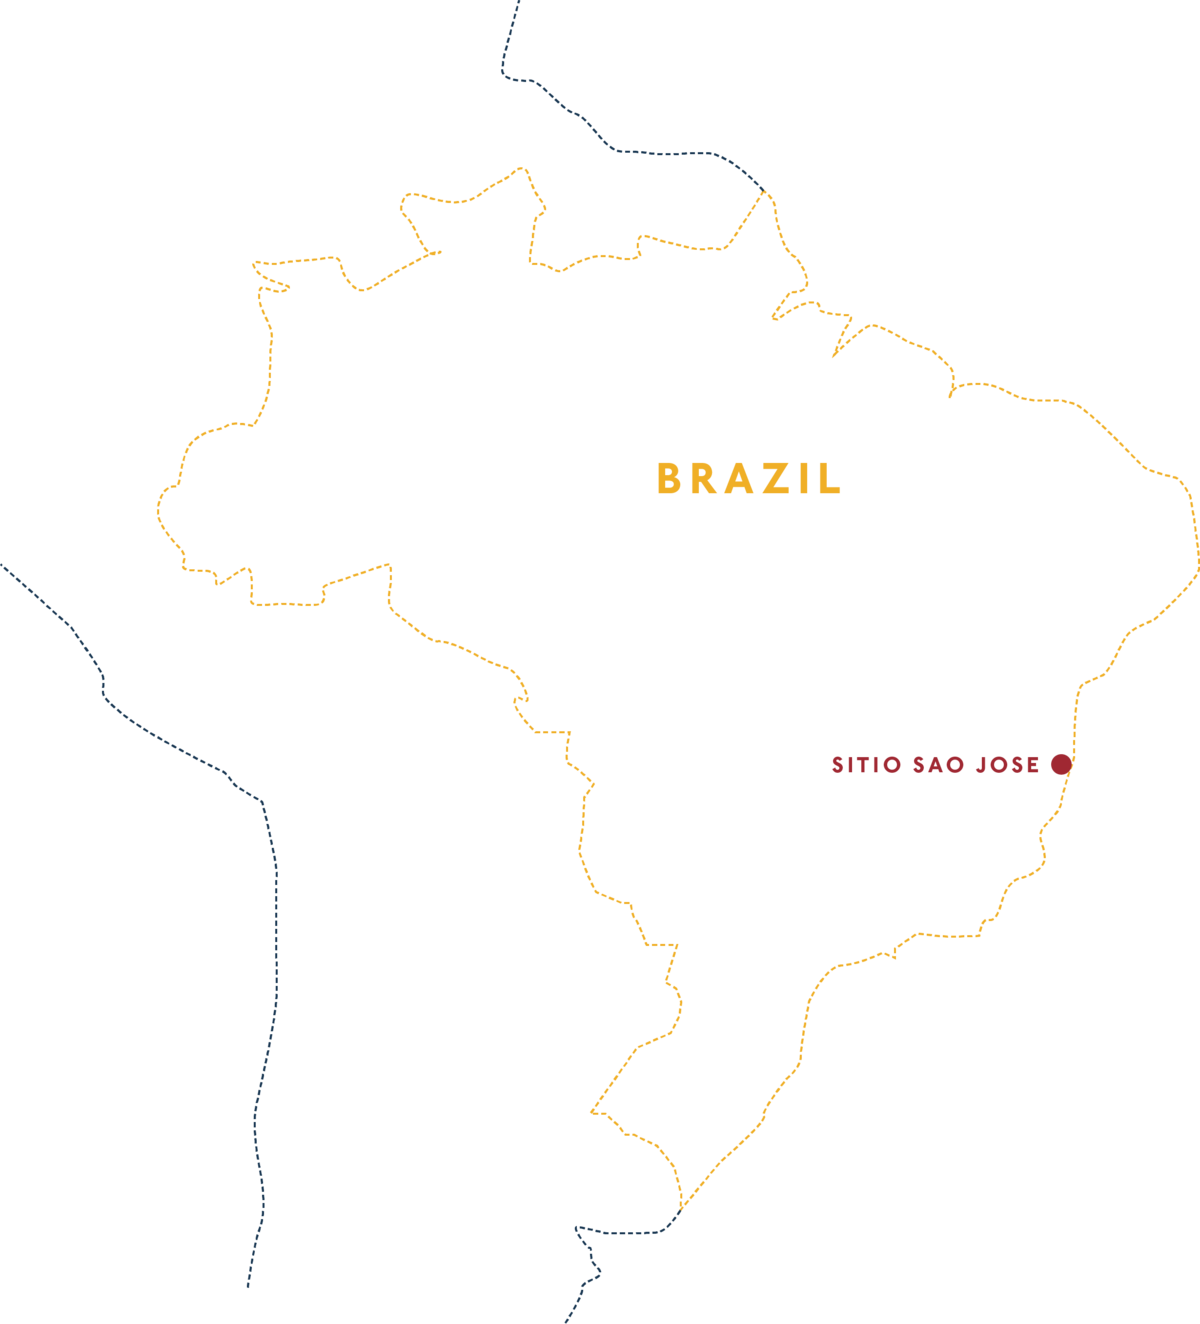 Brazil Sítio São José